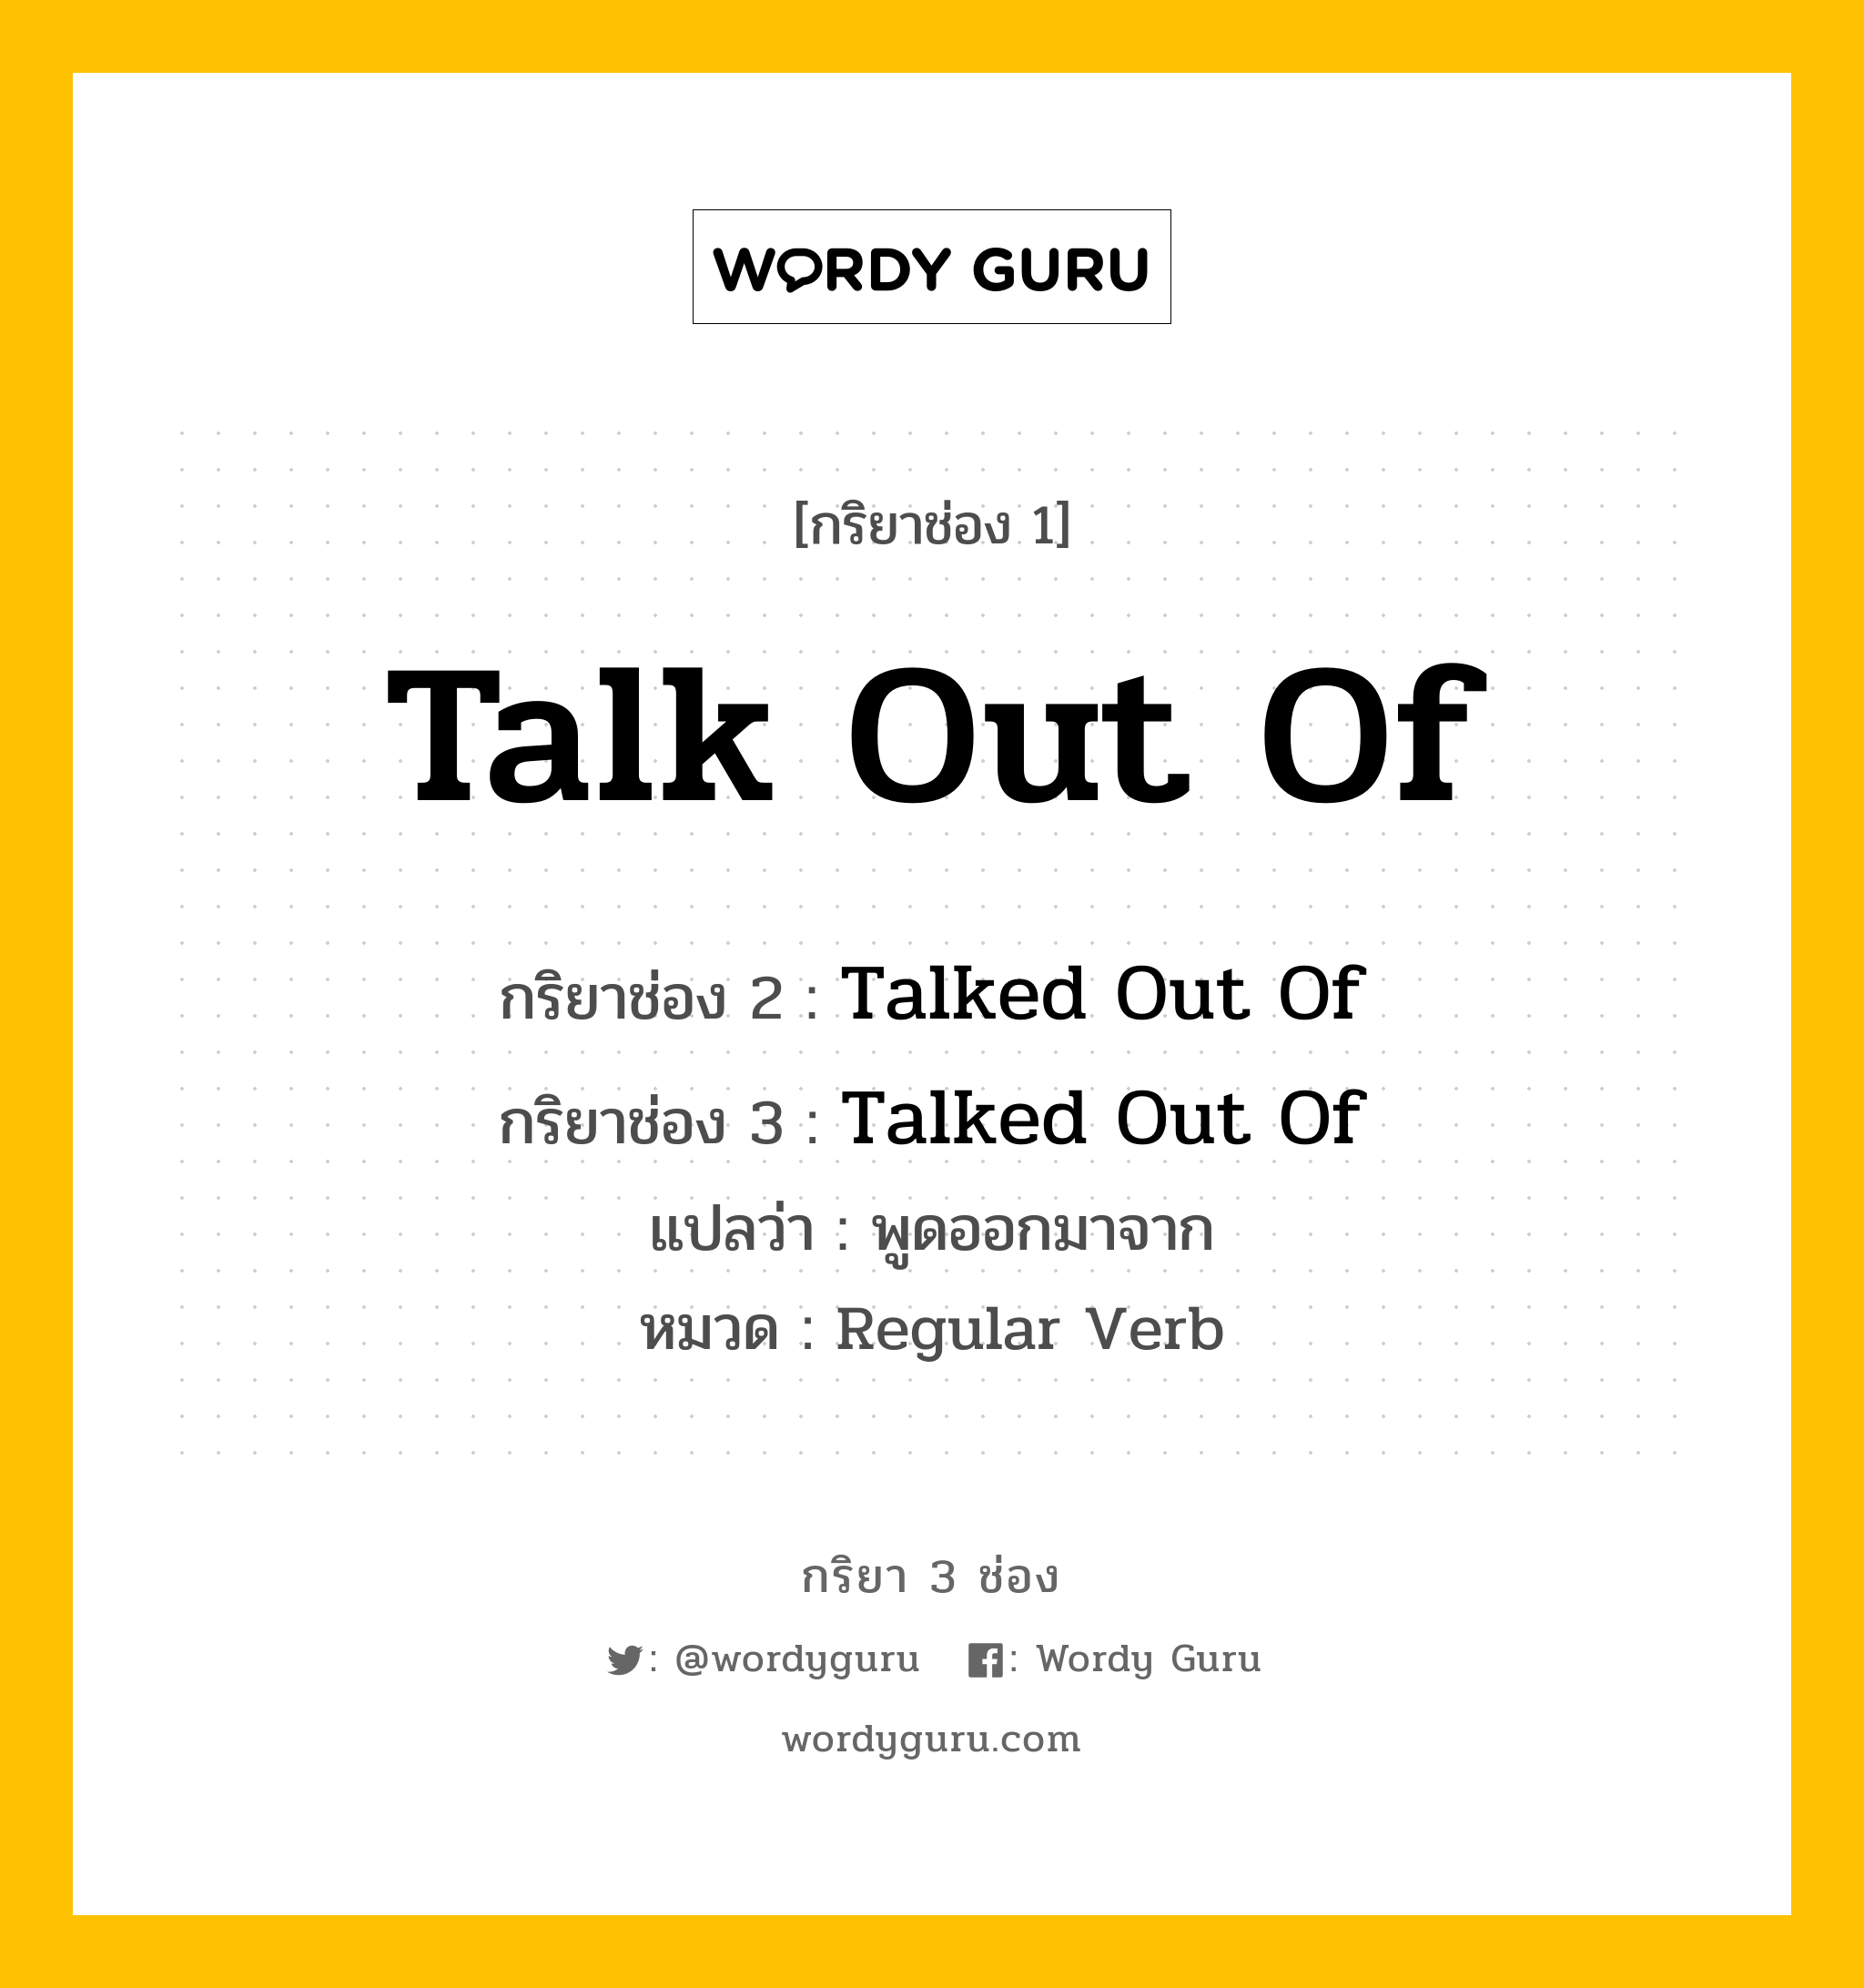 กริยา 3 ช่อง: Talk Out Of ช่อง 2 Talk Out Of ช่อง 3 คืออะไร, กริยาช่อง 1 Talk Out Of กริยาช่อง 2 Talked Out Of กริยาช่อง 3 Talked Out Of แปลว่า พูดออกมาจาก หมวด Regular Verb หมวด Regular Verb